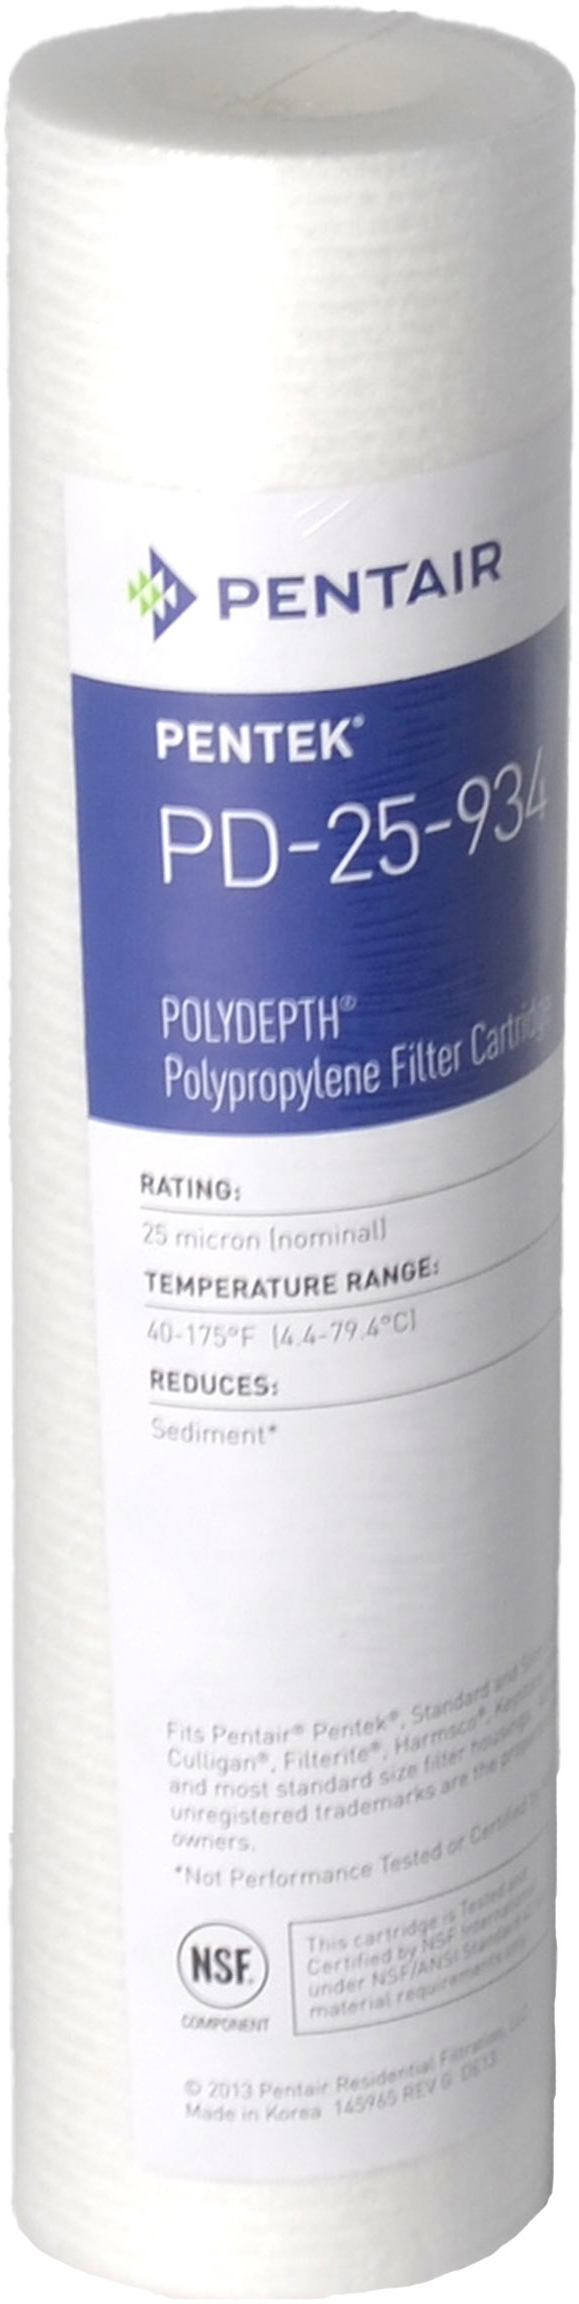 Характеристики картридж pentek от механических загрязнений Pentek PD-25-934 Polydepth (155751-43)